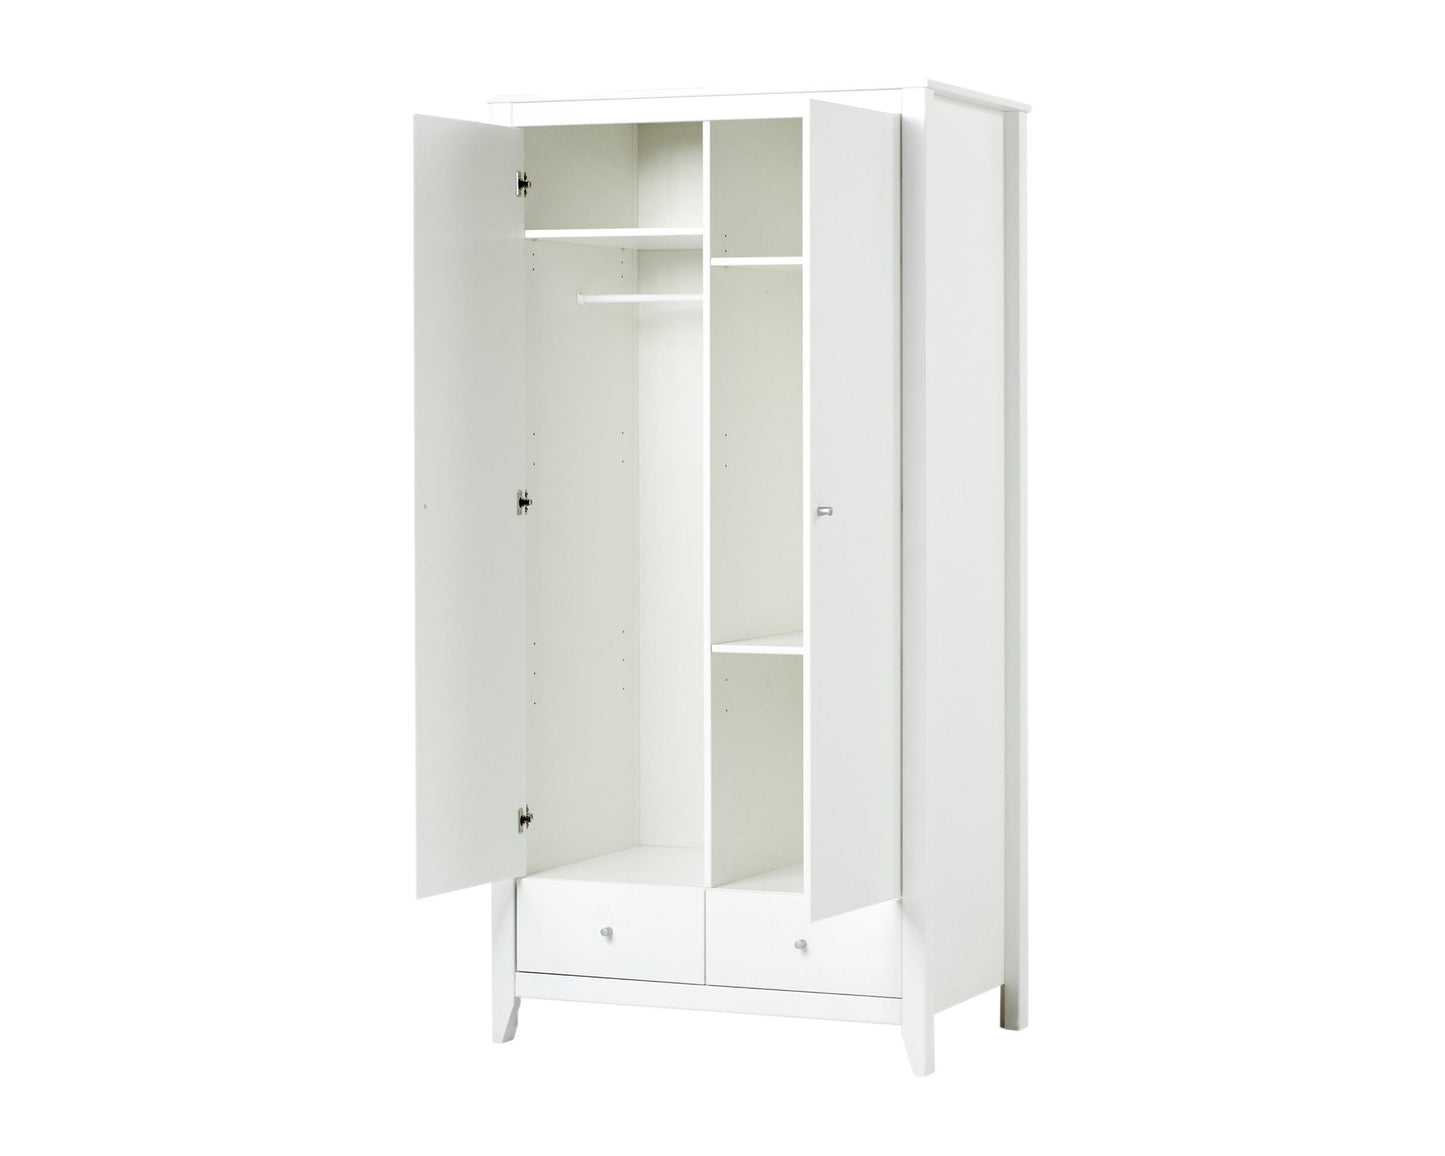 Wardrobe - 2 doors and 2 drawers - white